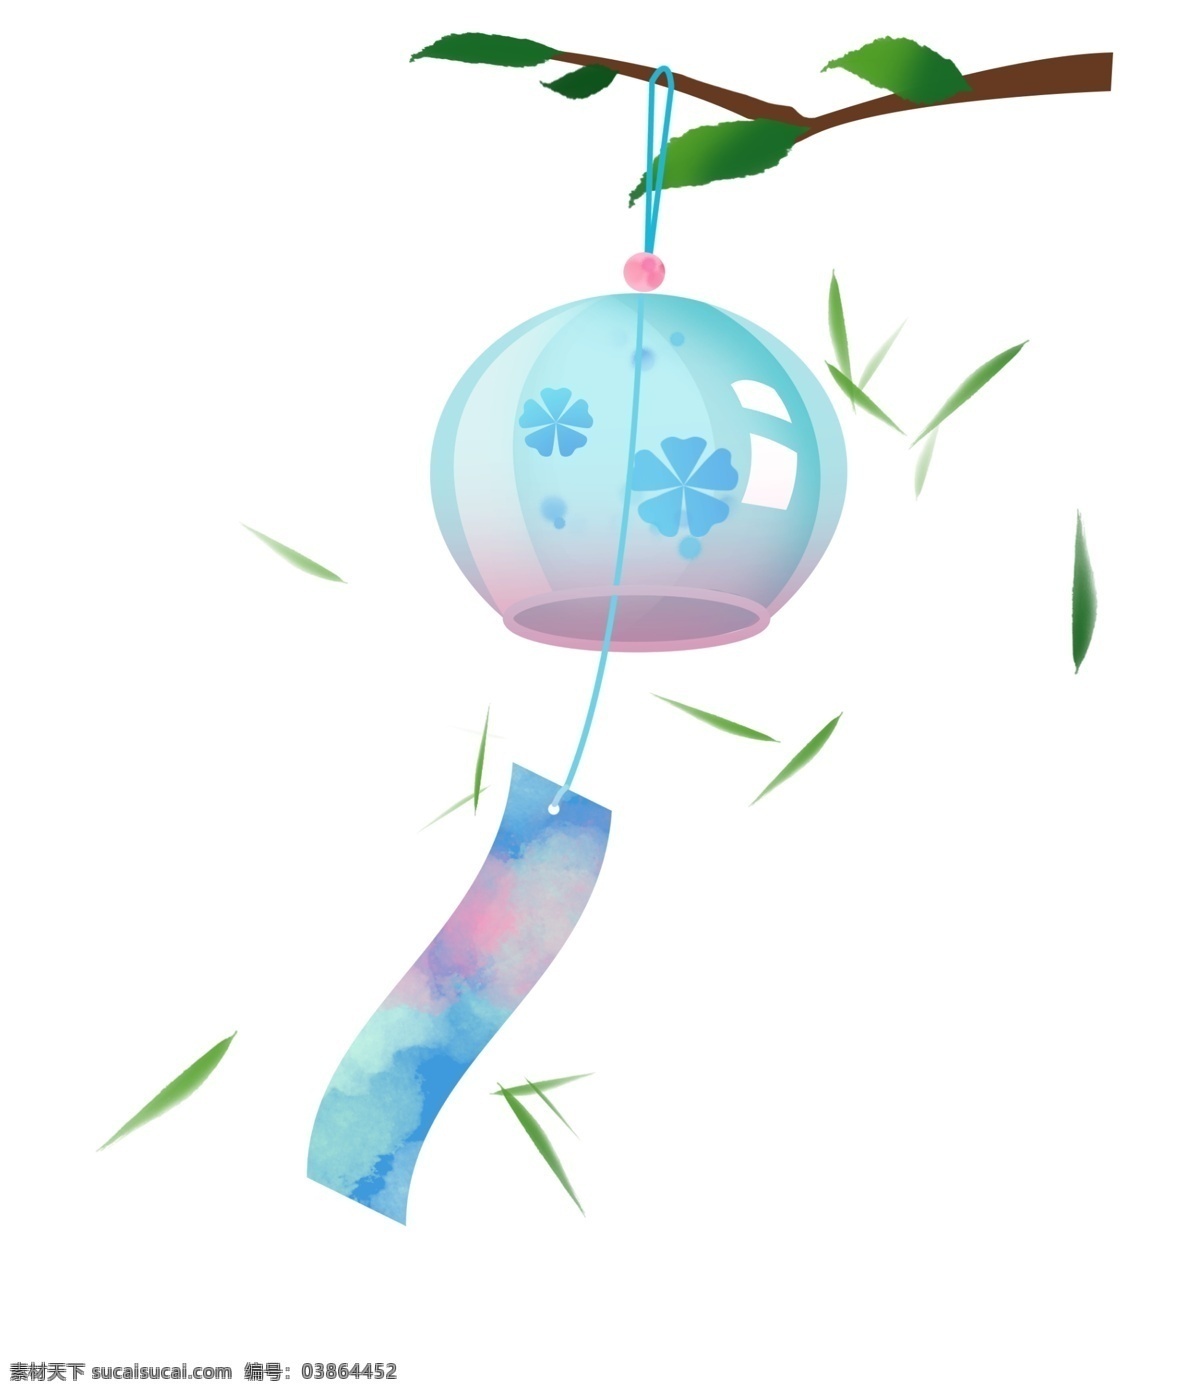 圆形 玻璃 风铃 插图 蓝色风铃 漂亮的风铃 时尚的风铃 圆形风铃 绿色植物 飘起的风铃 精美的风铃